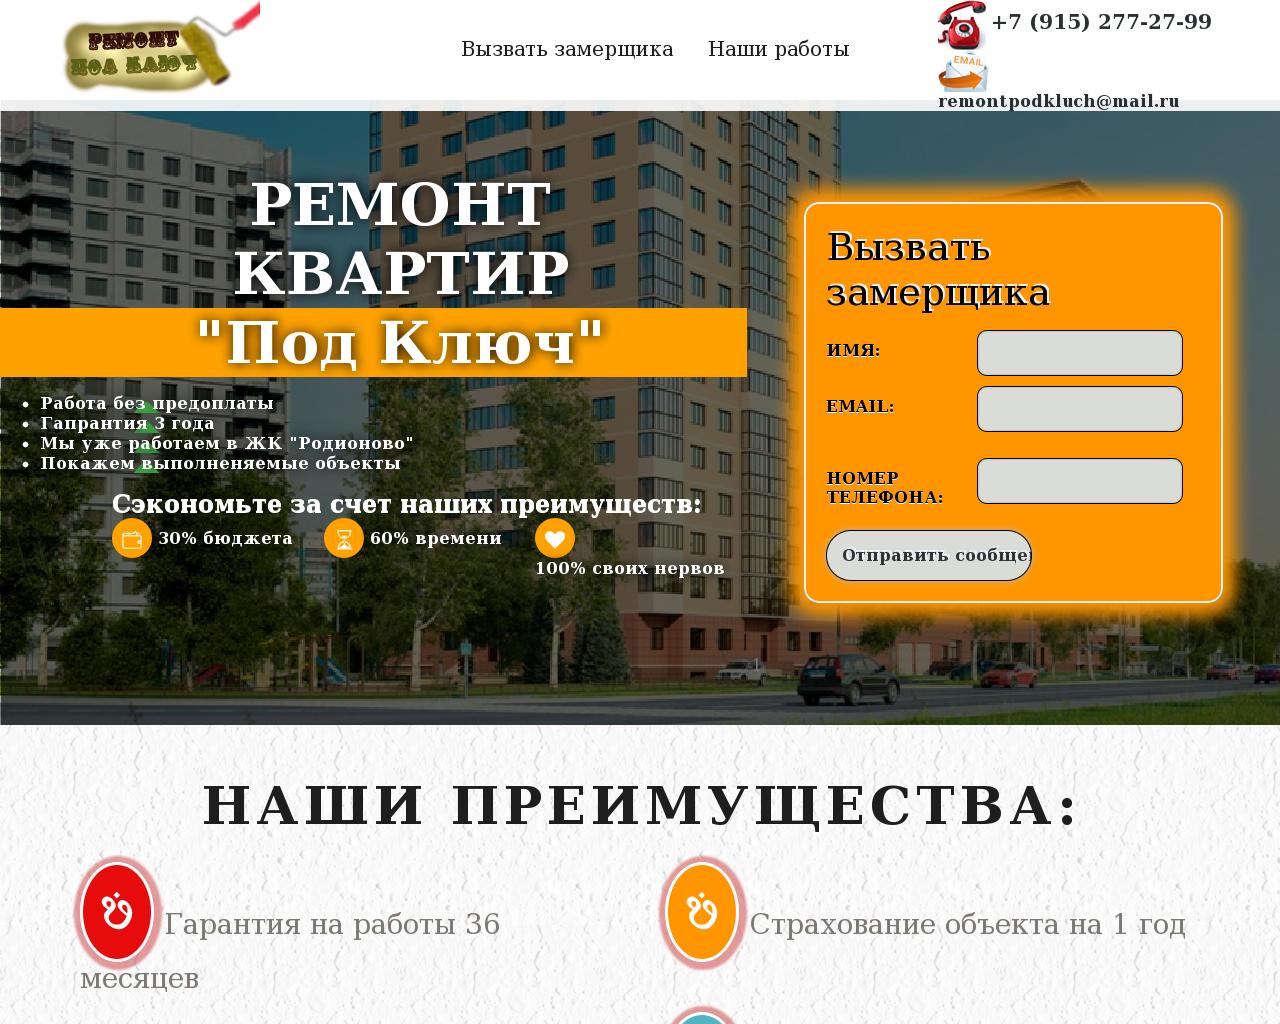 Изображение сайта remontpodkluch.ru в разрешении 1280x1024